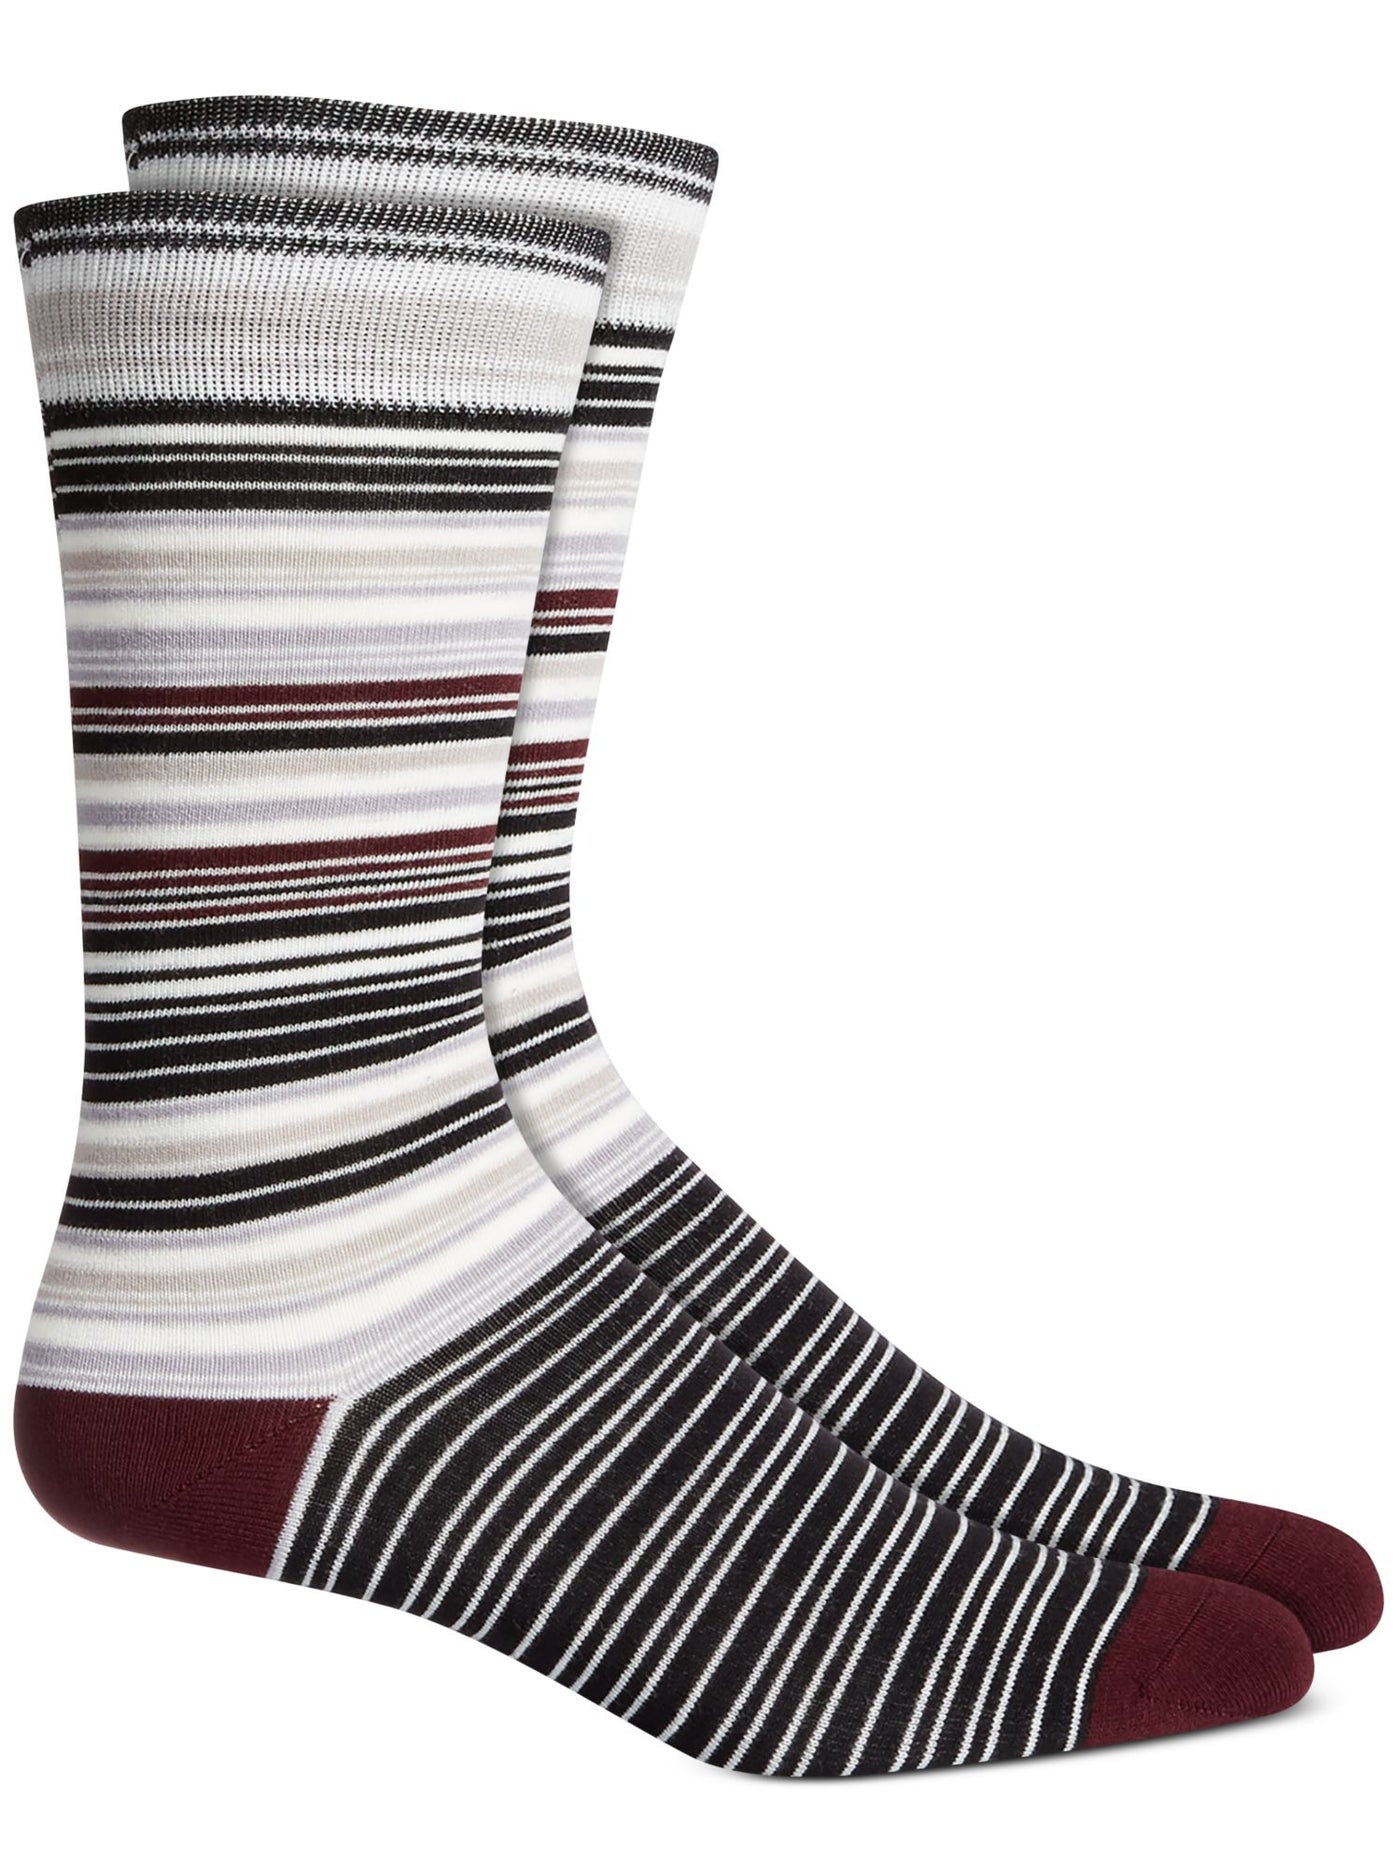 ALFANI Mens Port Maroon Striped Ribbed-Knit Moisture Wicking Seamless Dress Crew Socks 7-12